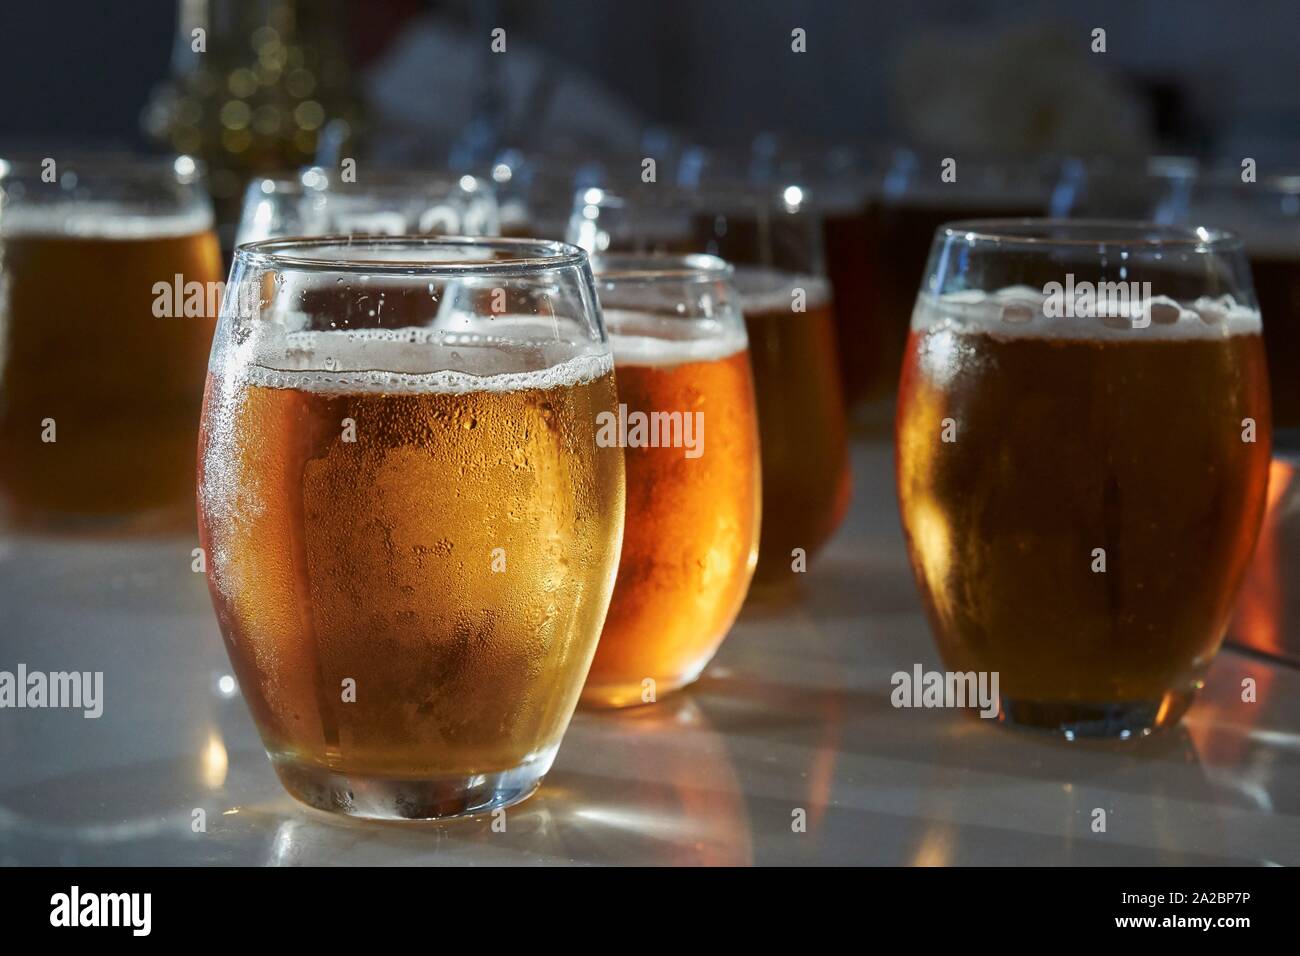 Buona e fresca birra bionda. Spagna. Foto Stock